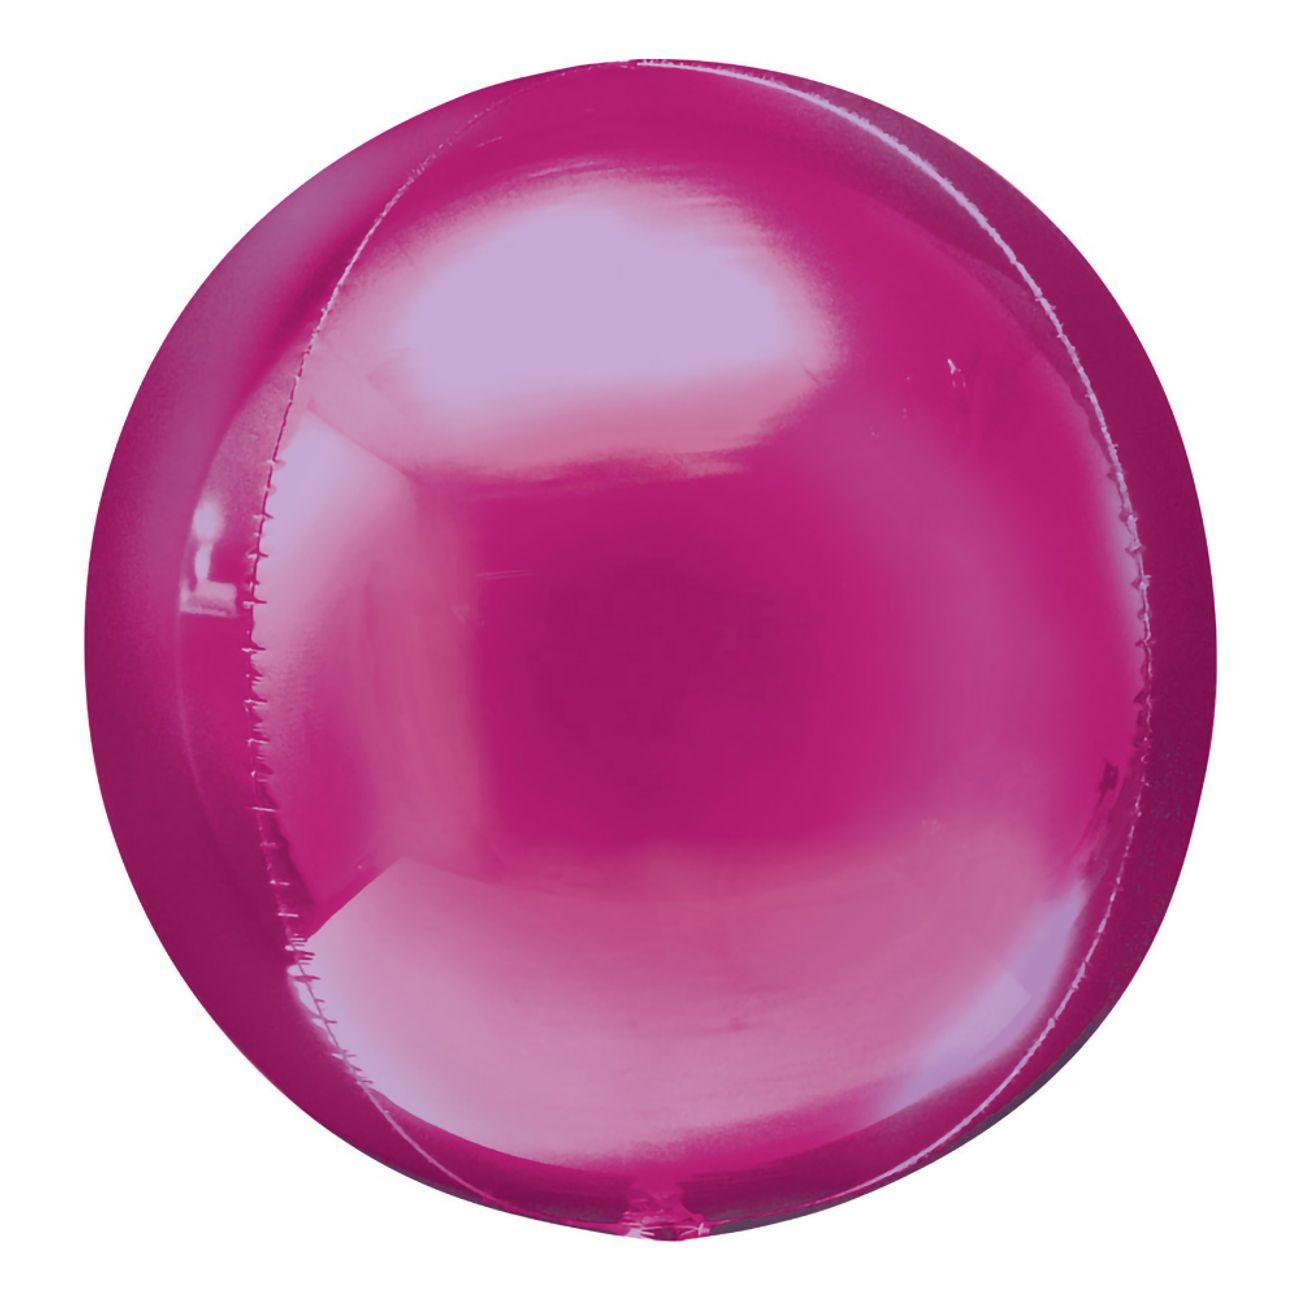 folieballong-orbz-morkrosa-45384-2